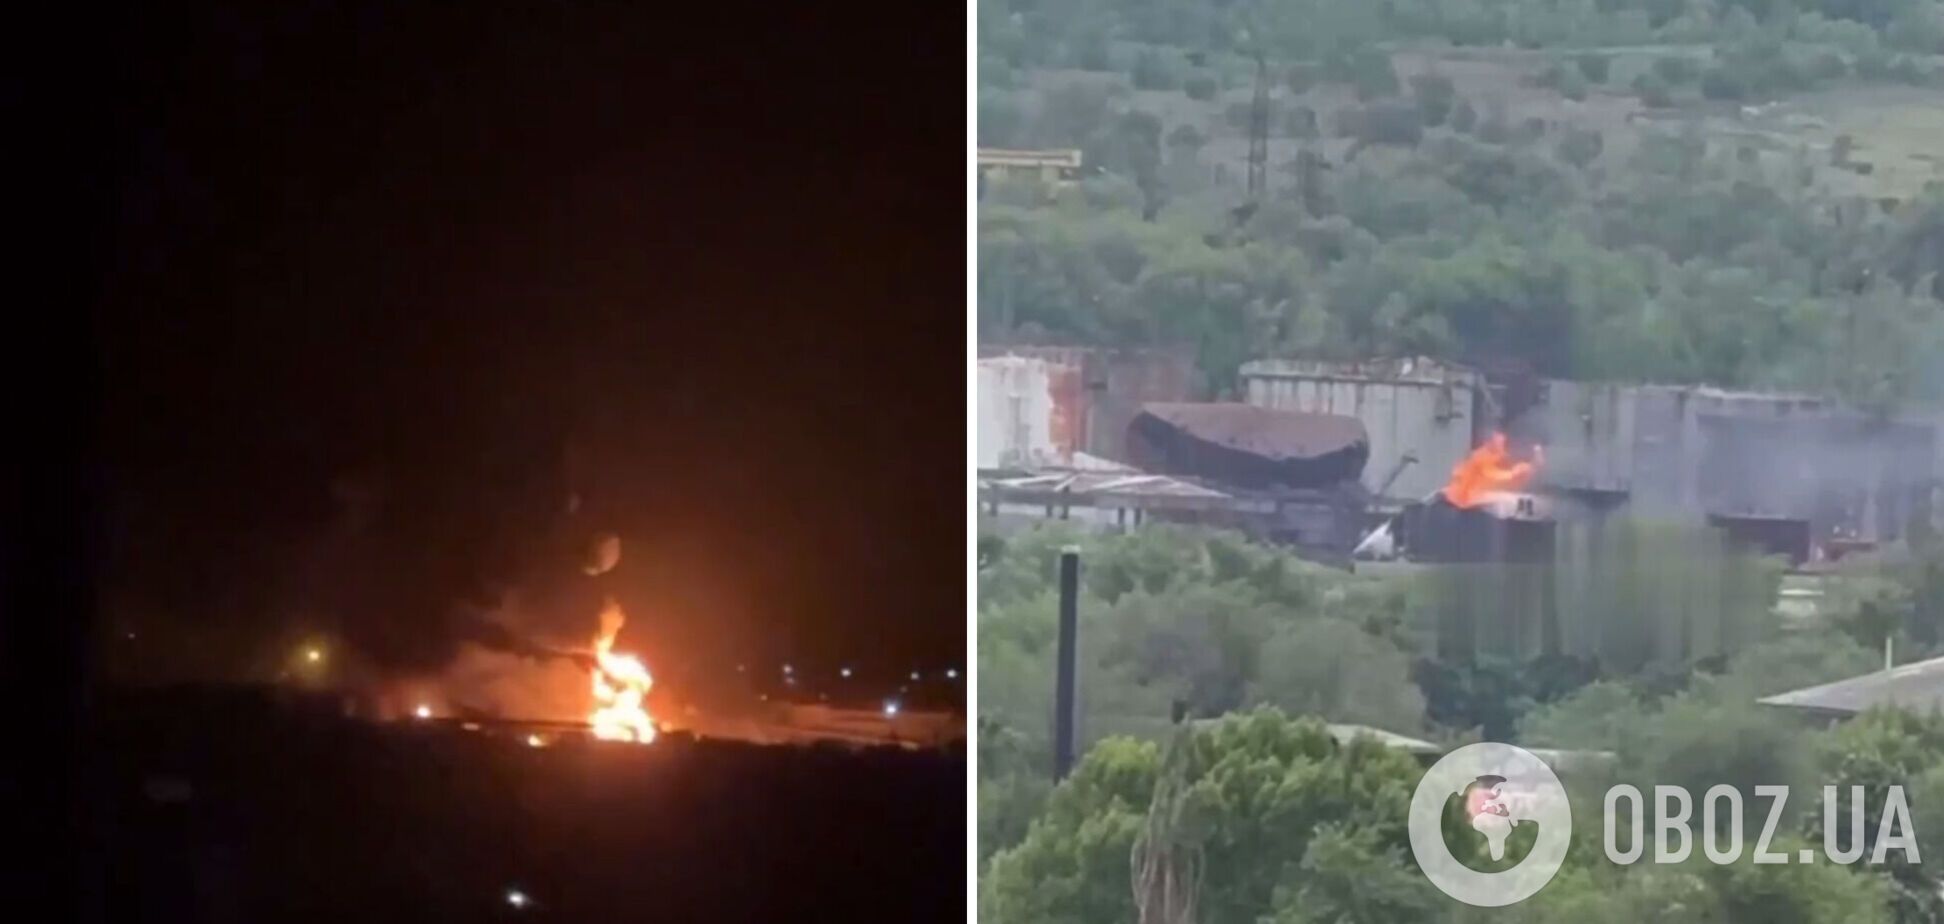 Видны следы пожара: появились спутниковые снимки последствий удара по нефтебазе в Луганске